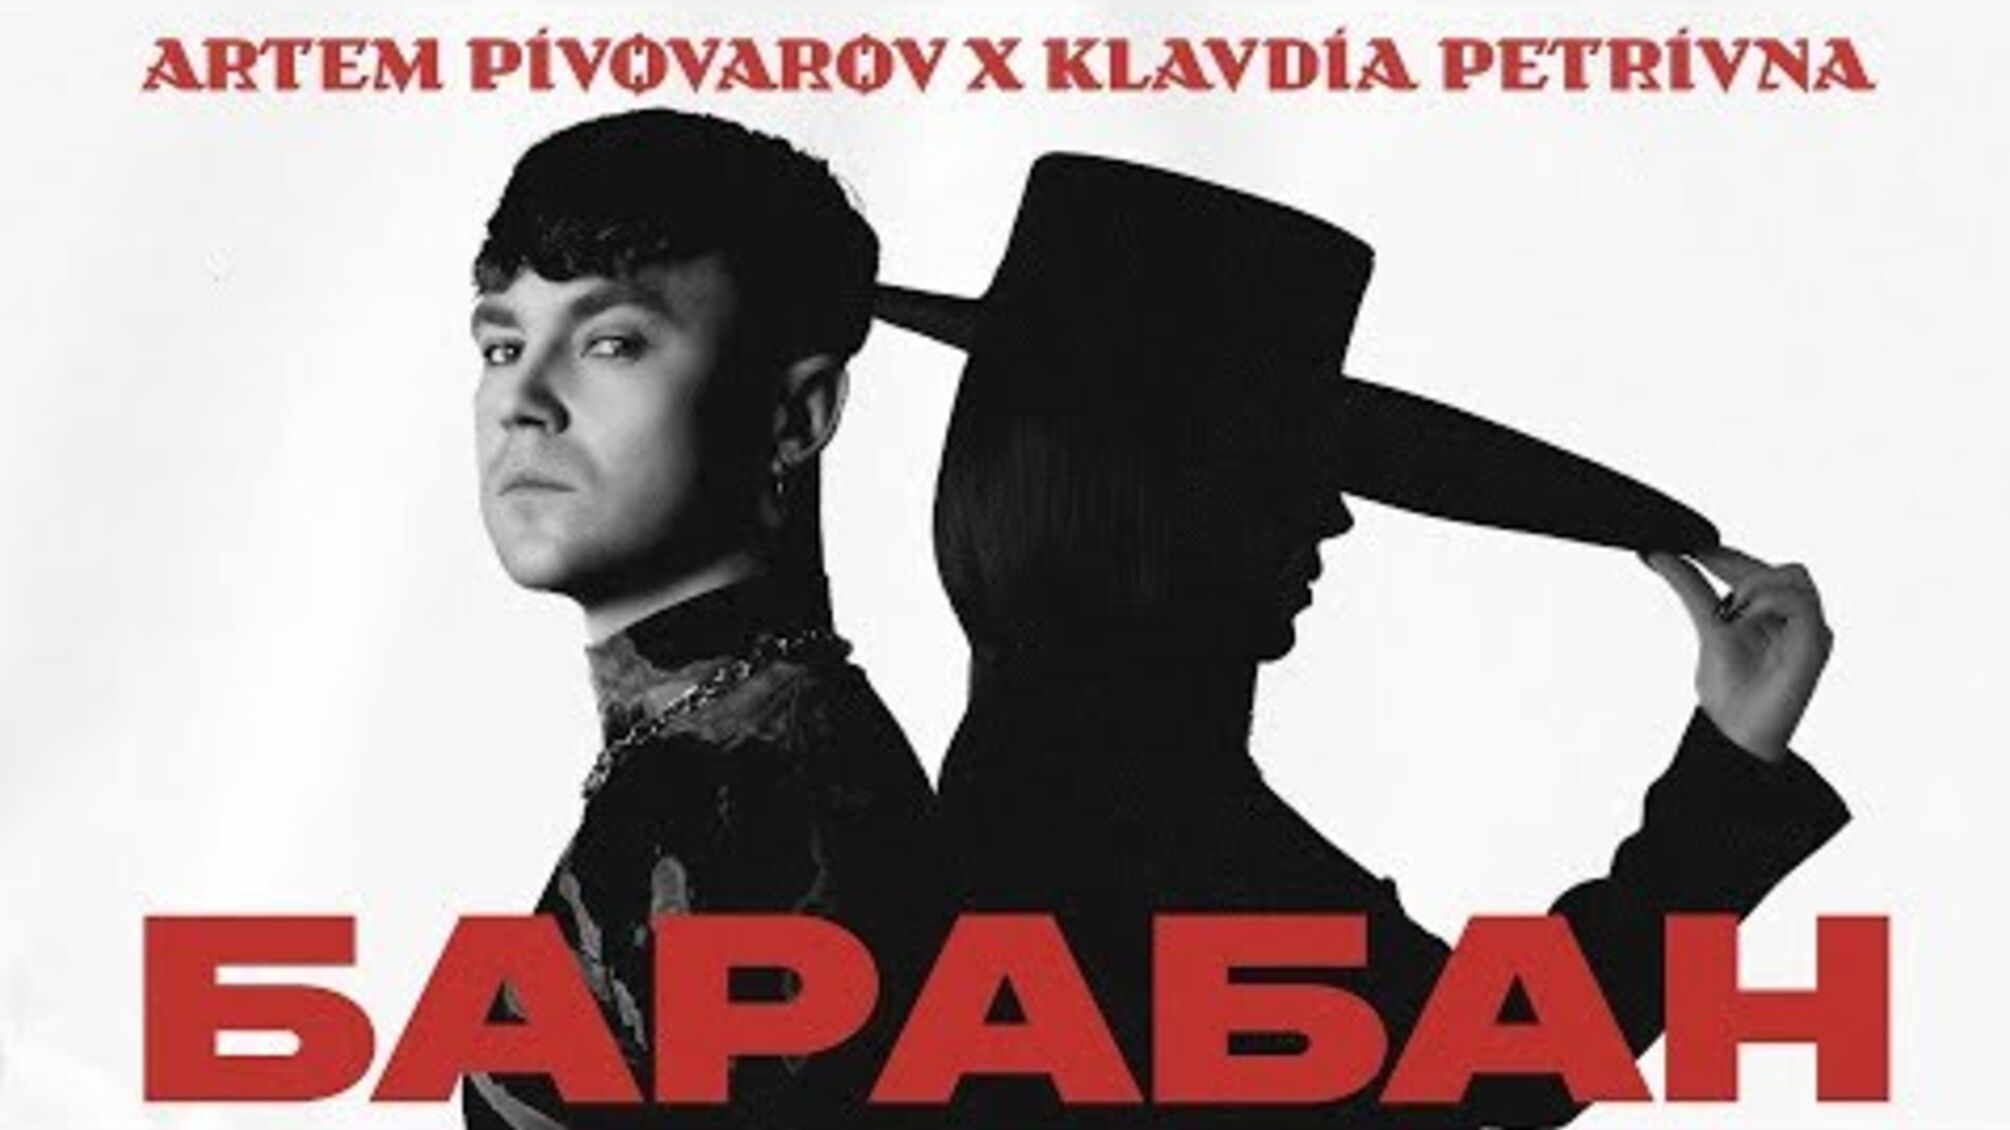 Пивоваров и Клавдия Петровна